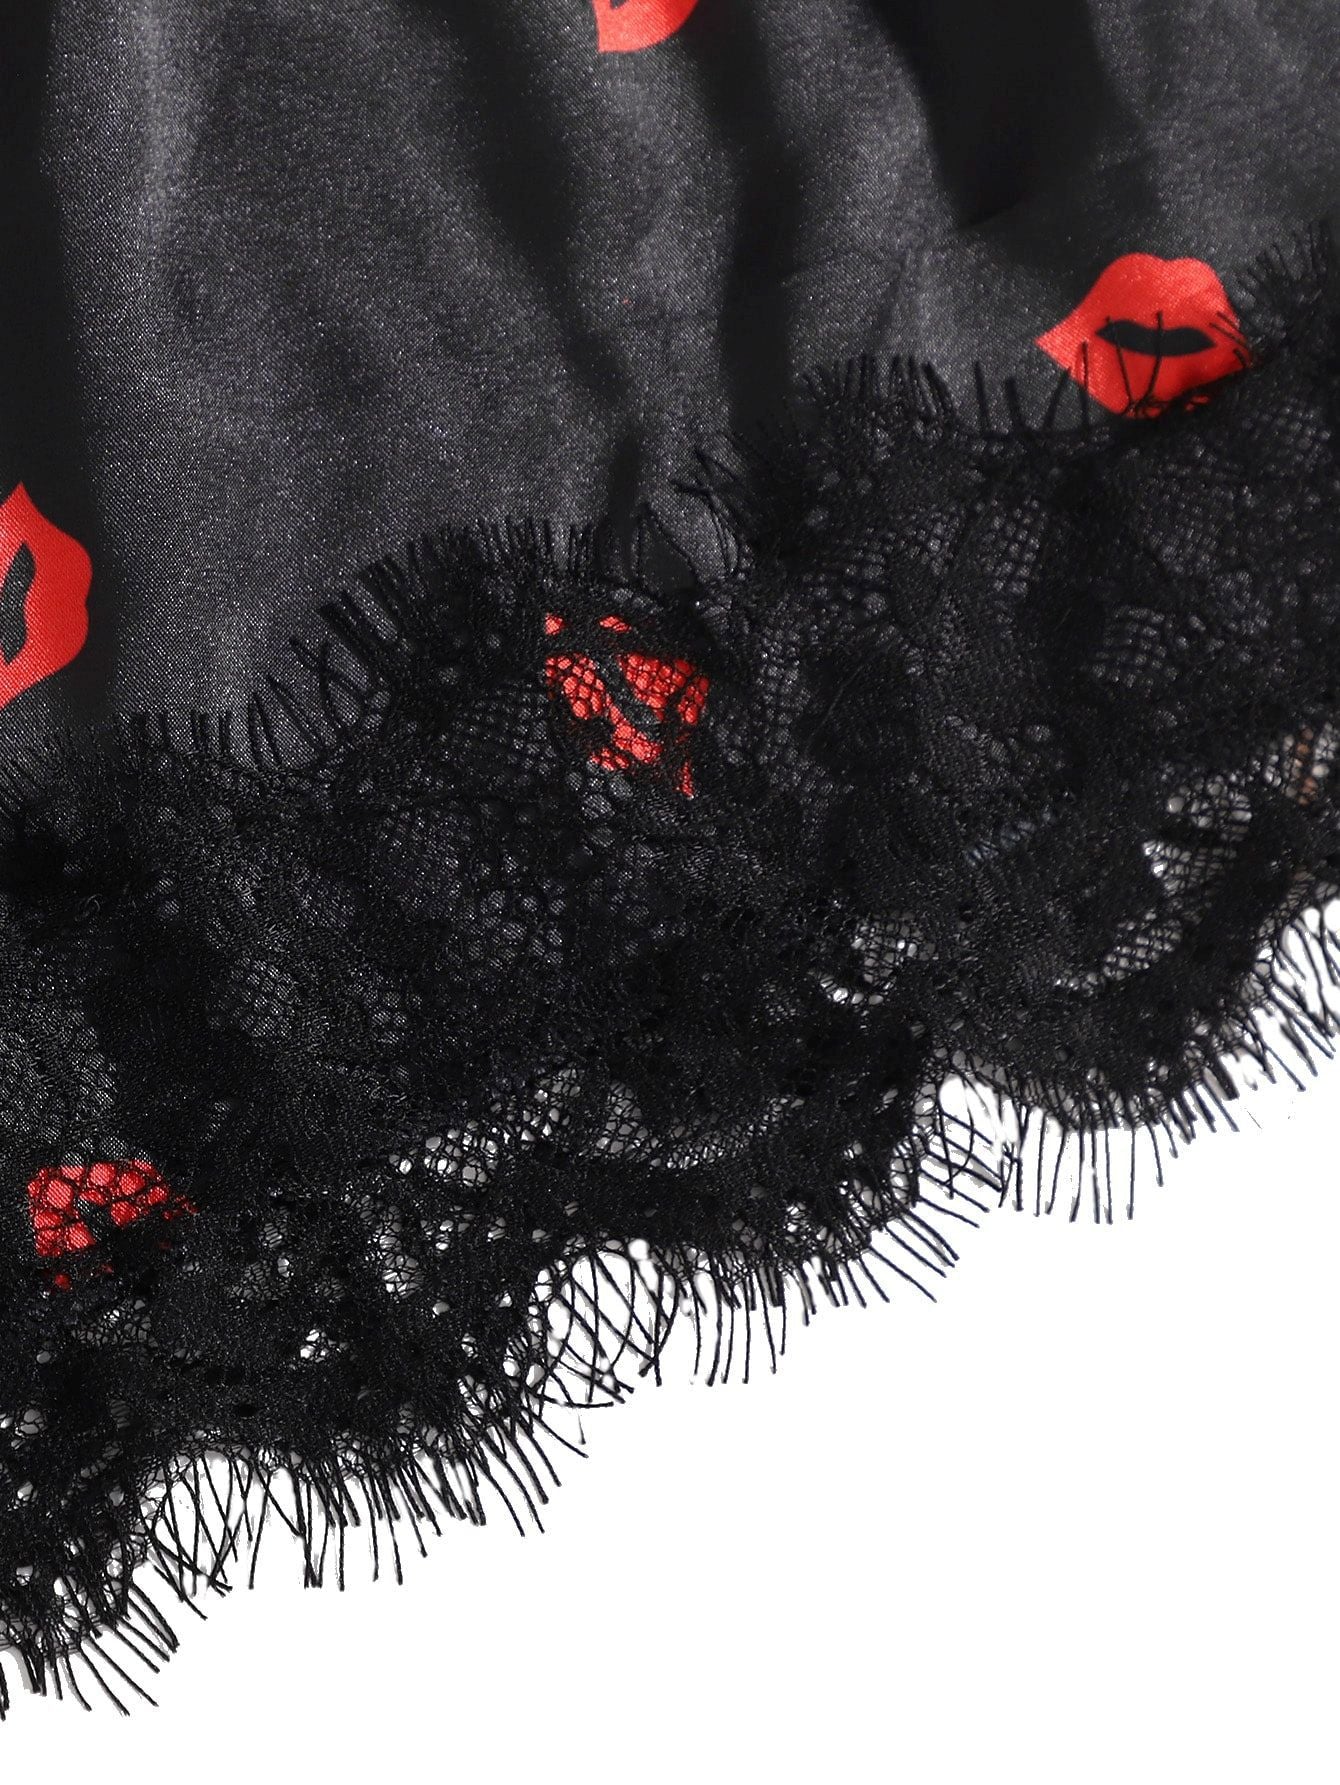 Lip Printed Black Lace Bathrobe Four-Piece Lingerie Set